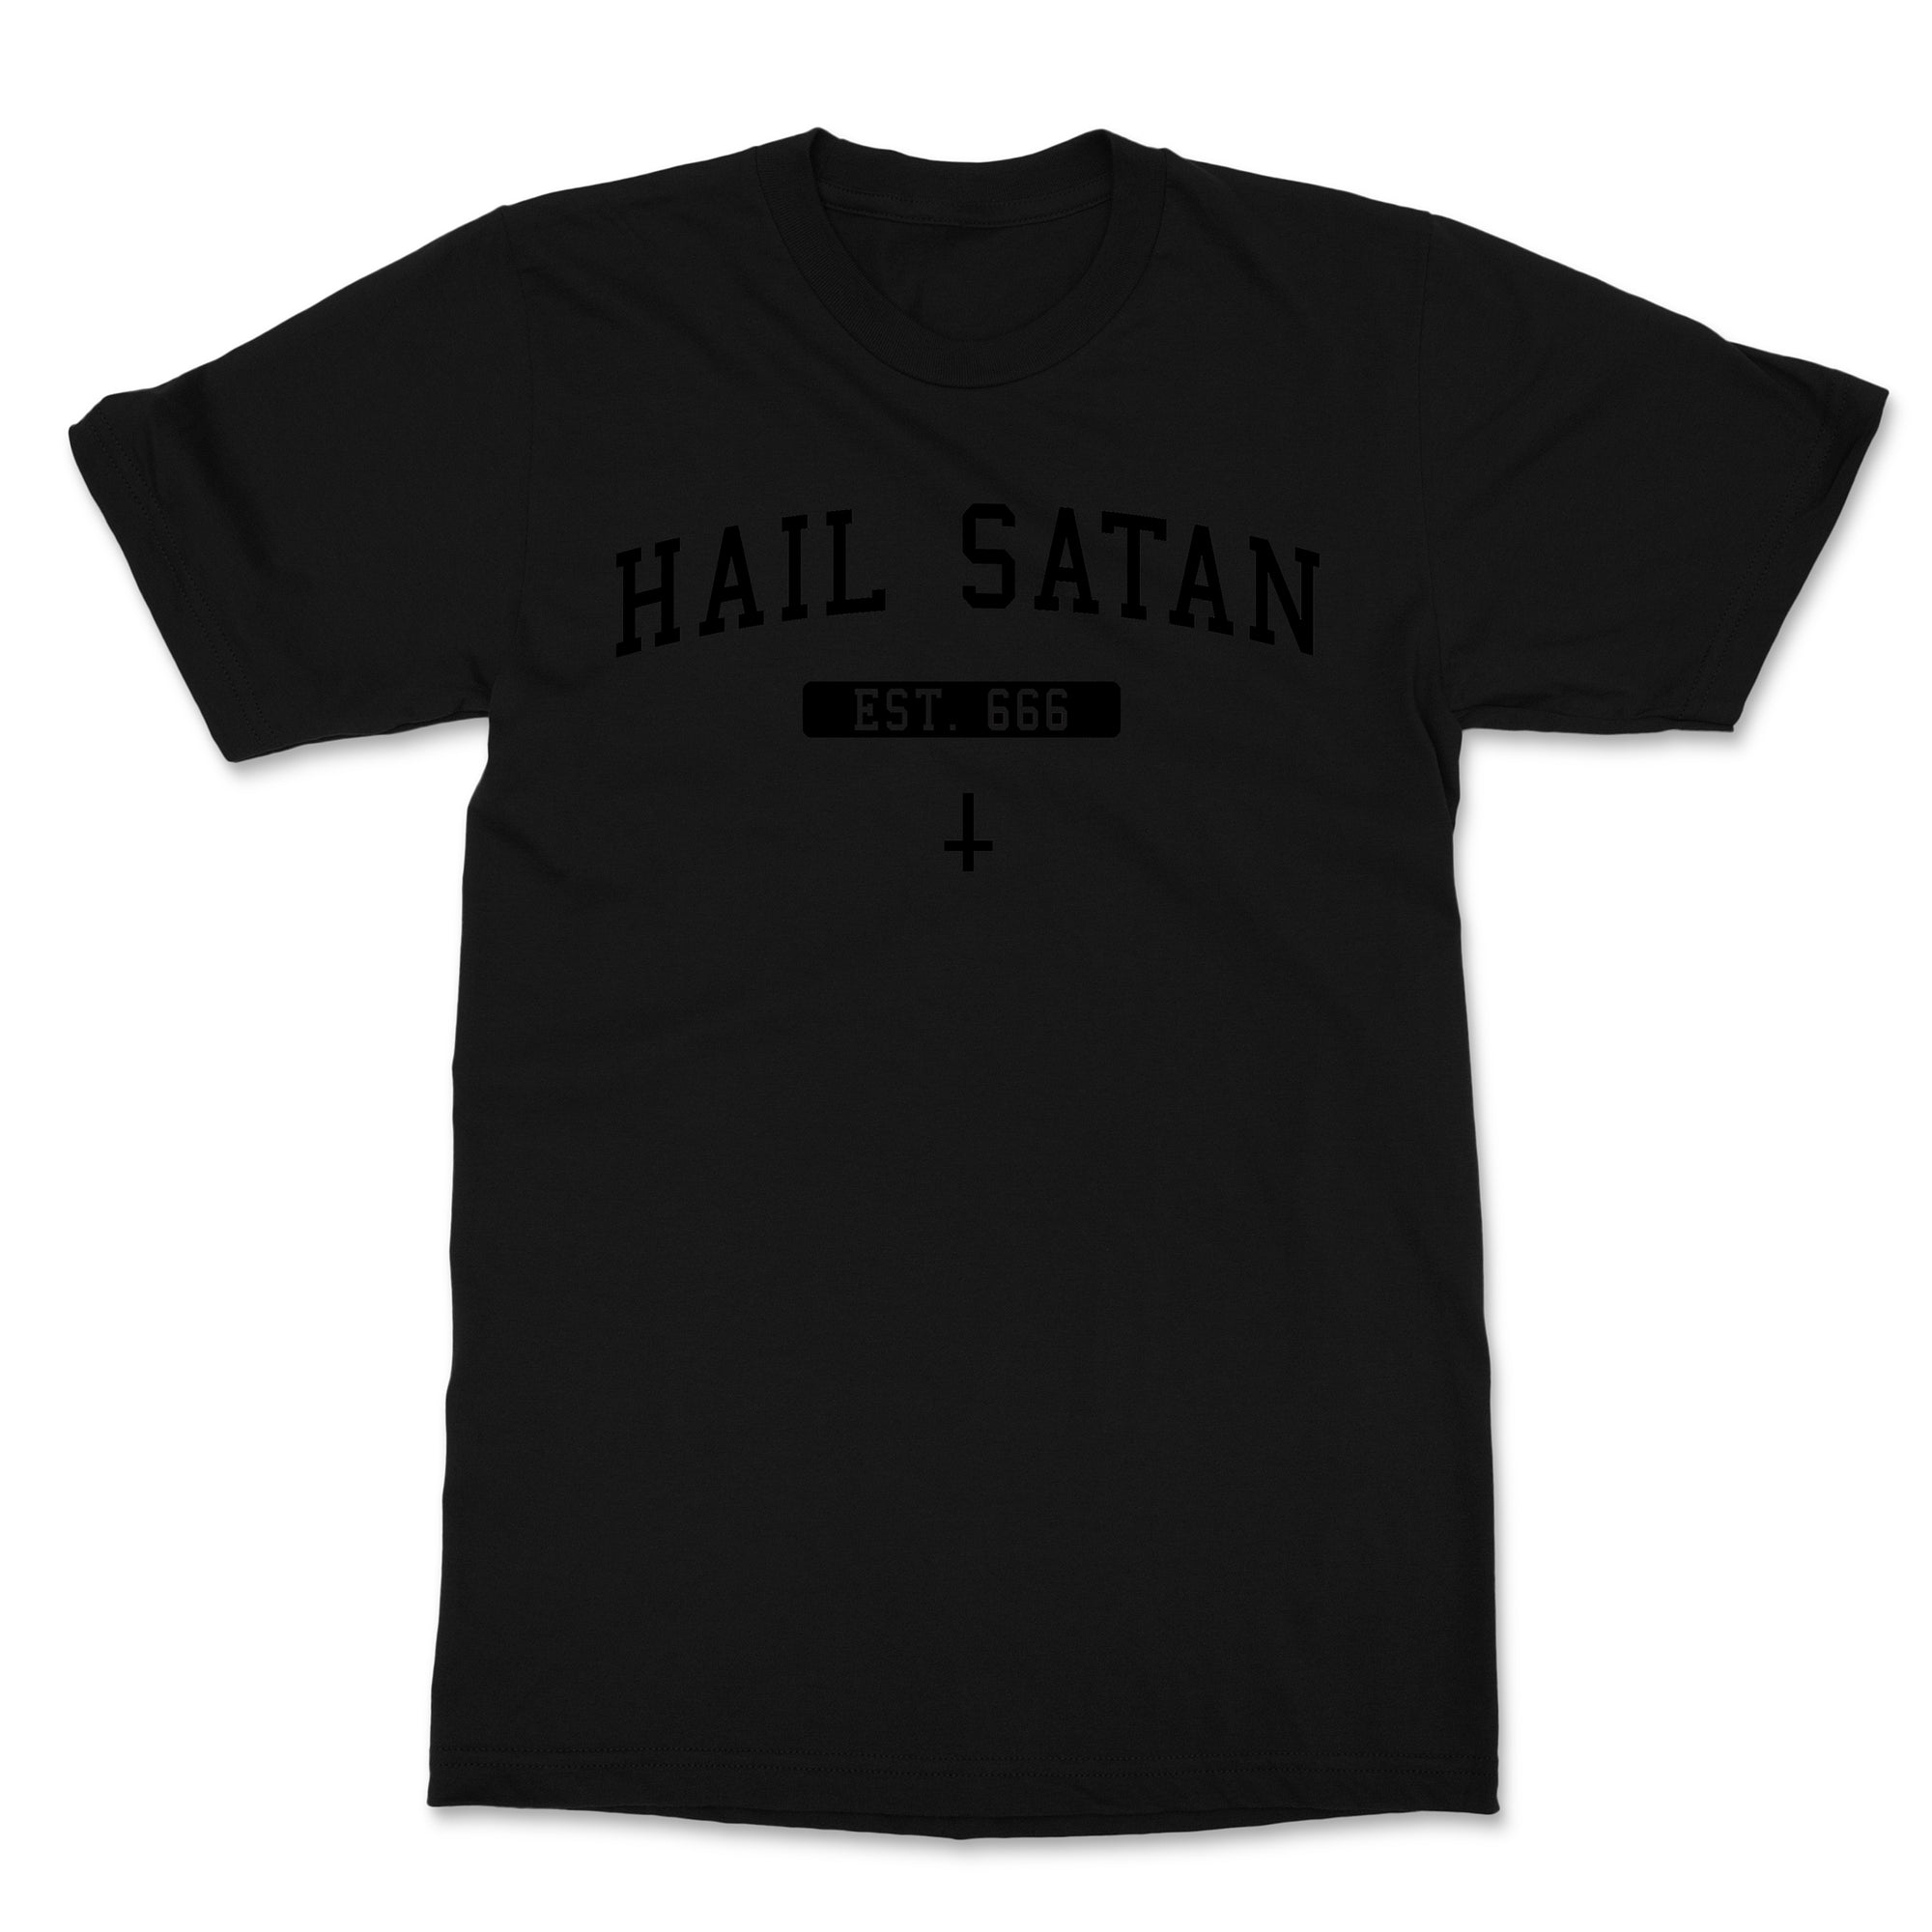 Hail Satan Black on Black T-Shirt